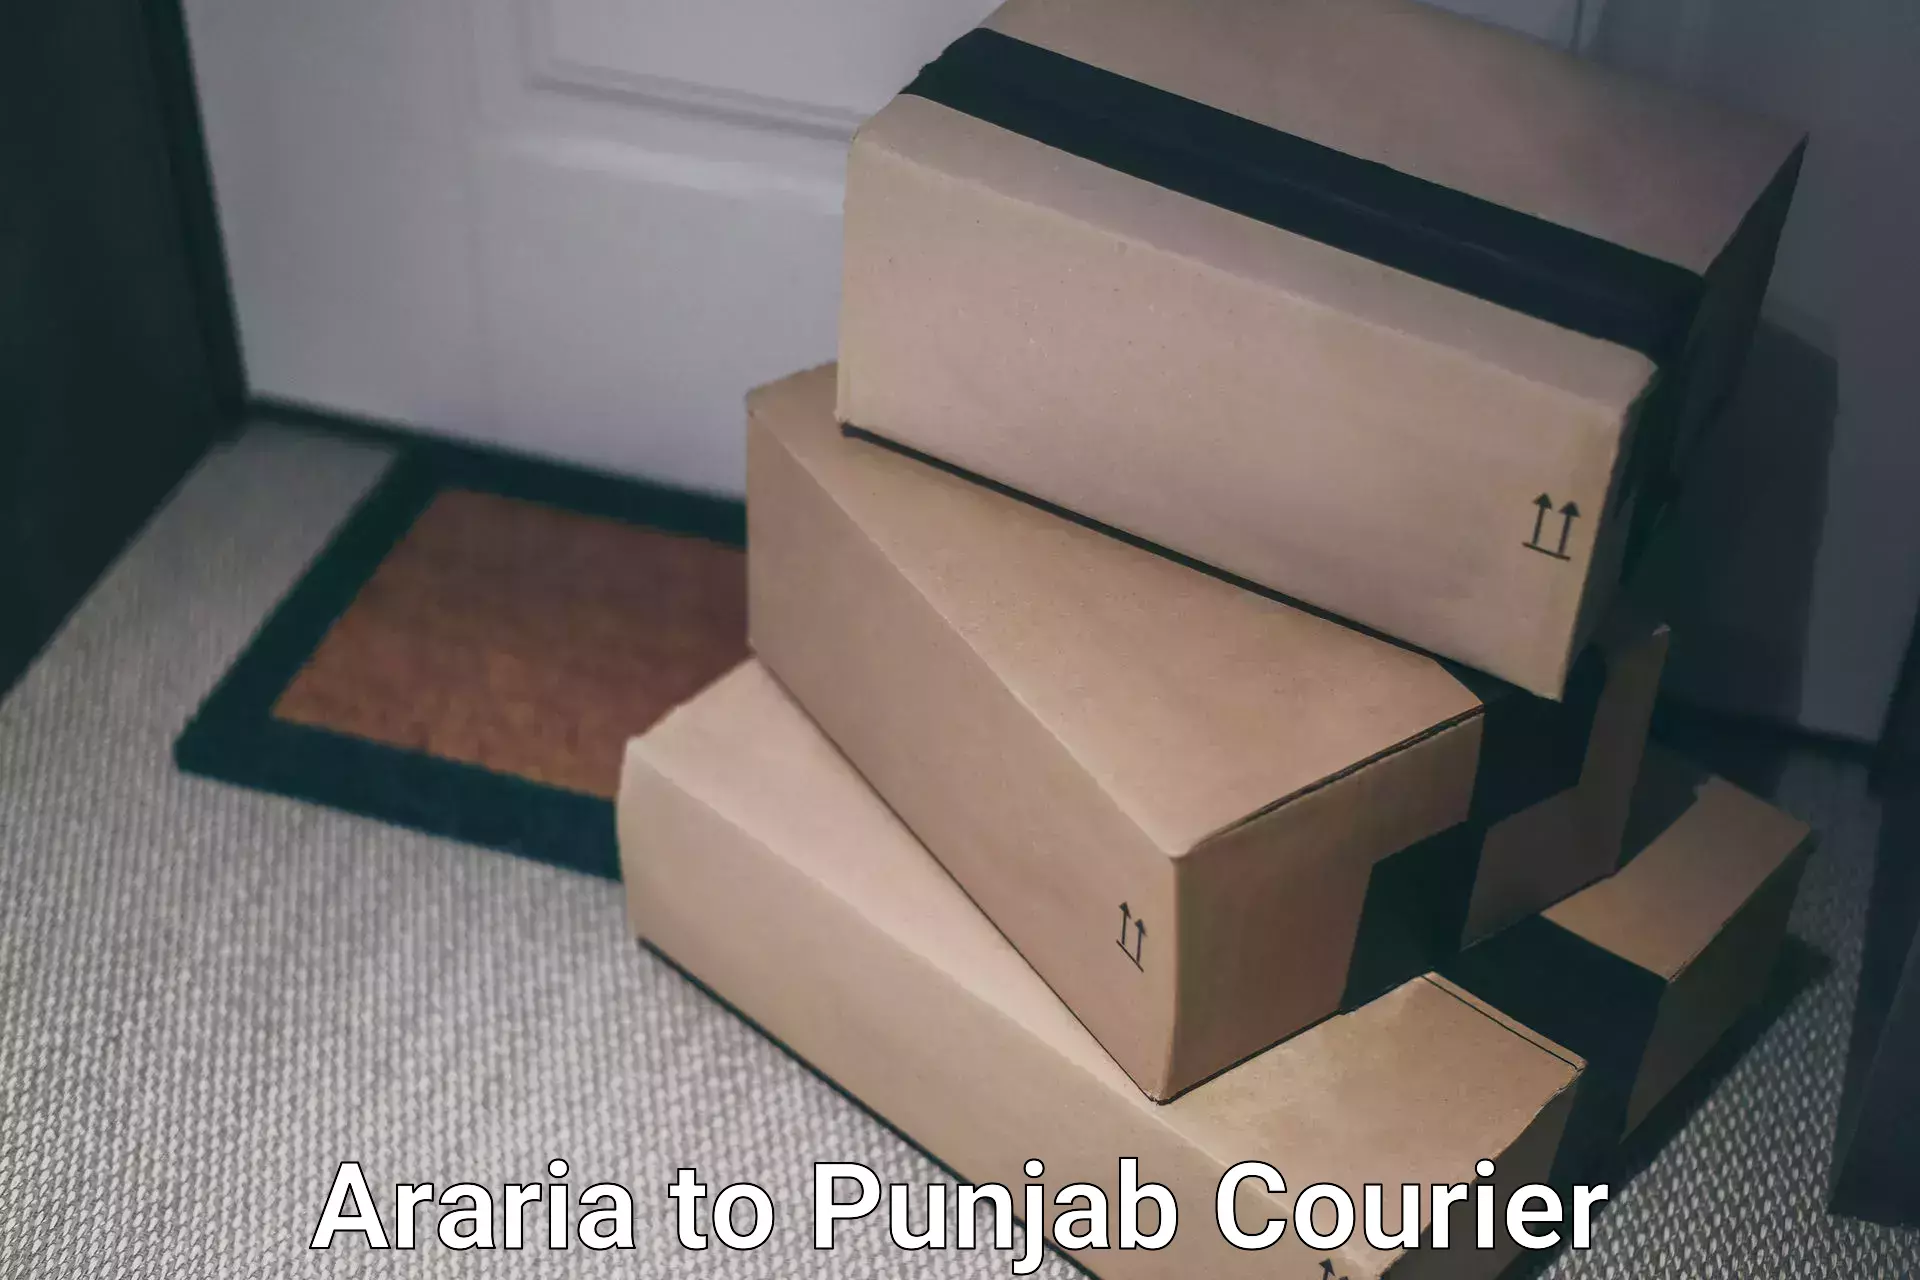 Digital courier platforms Araria to Jalalabad